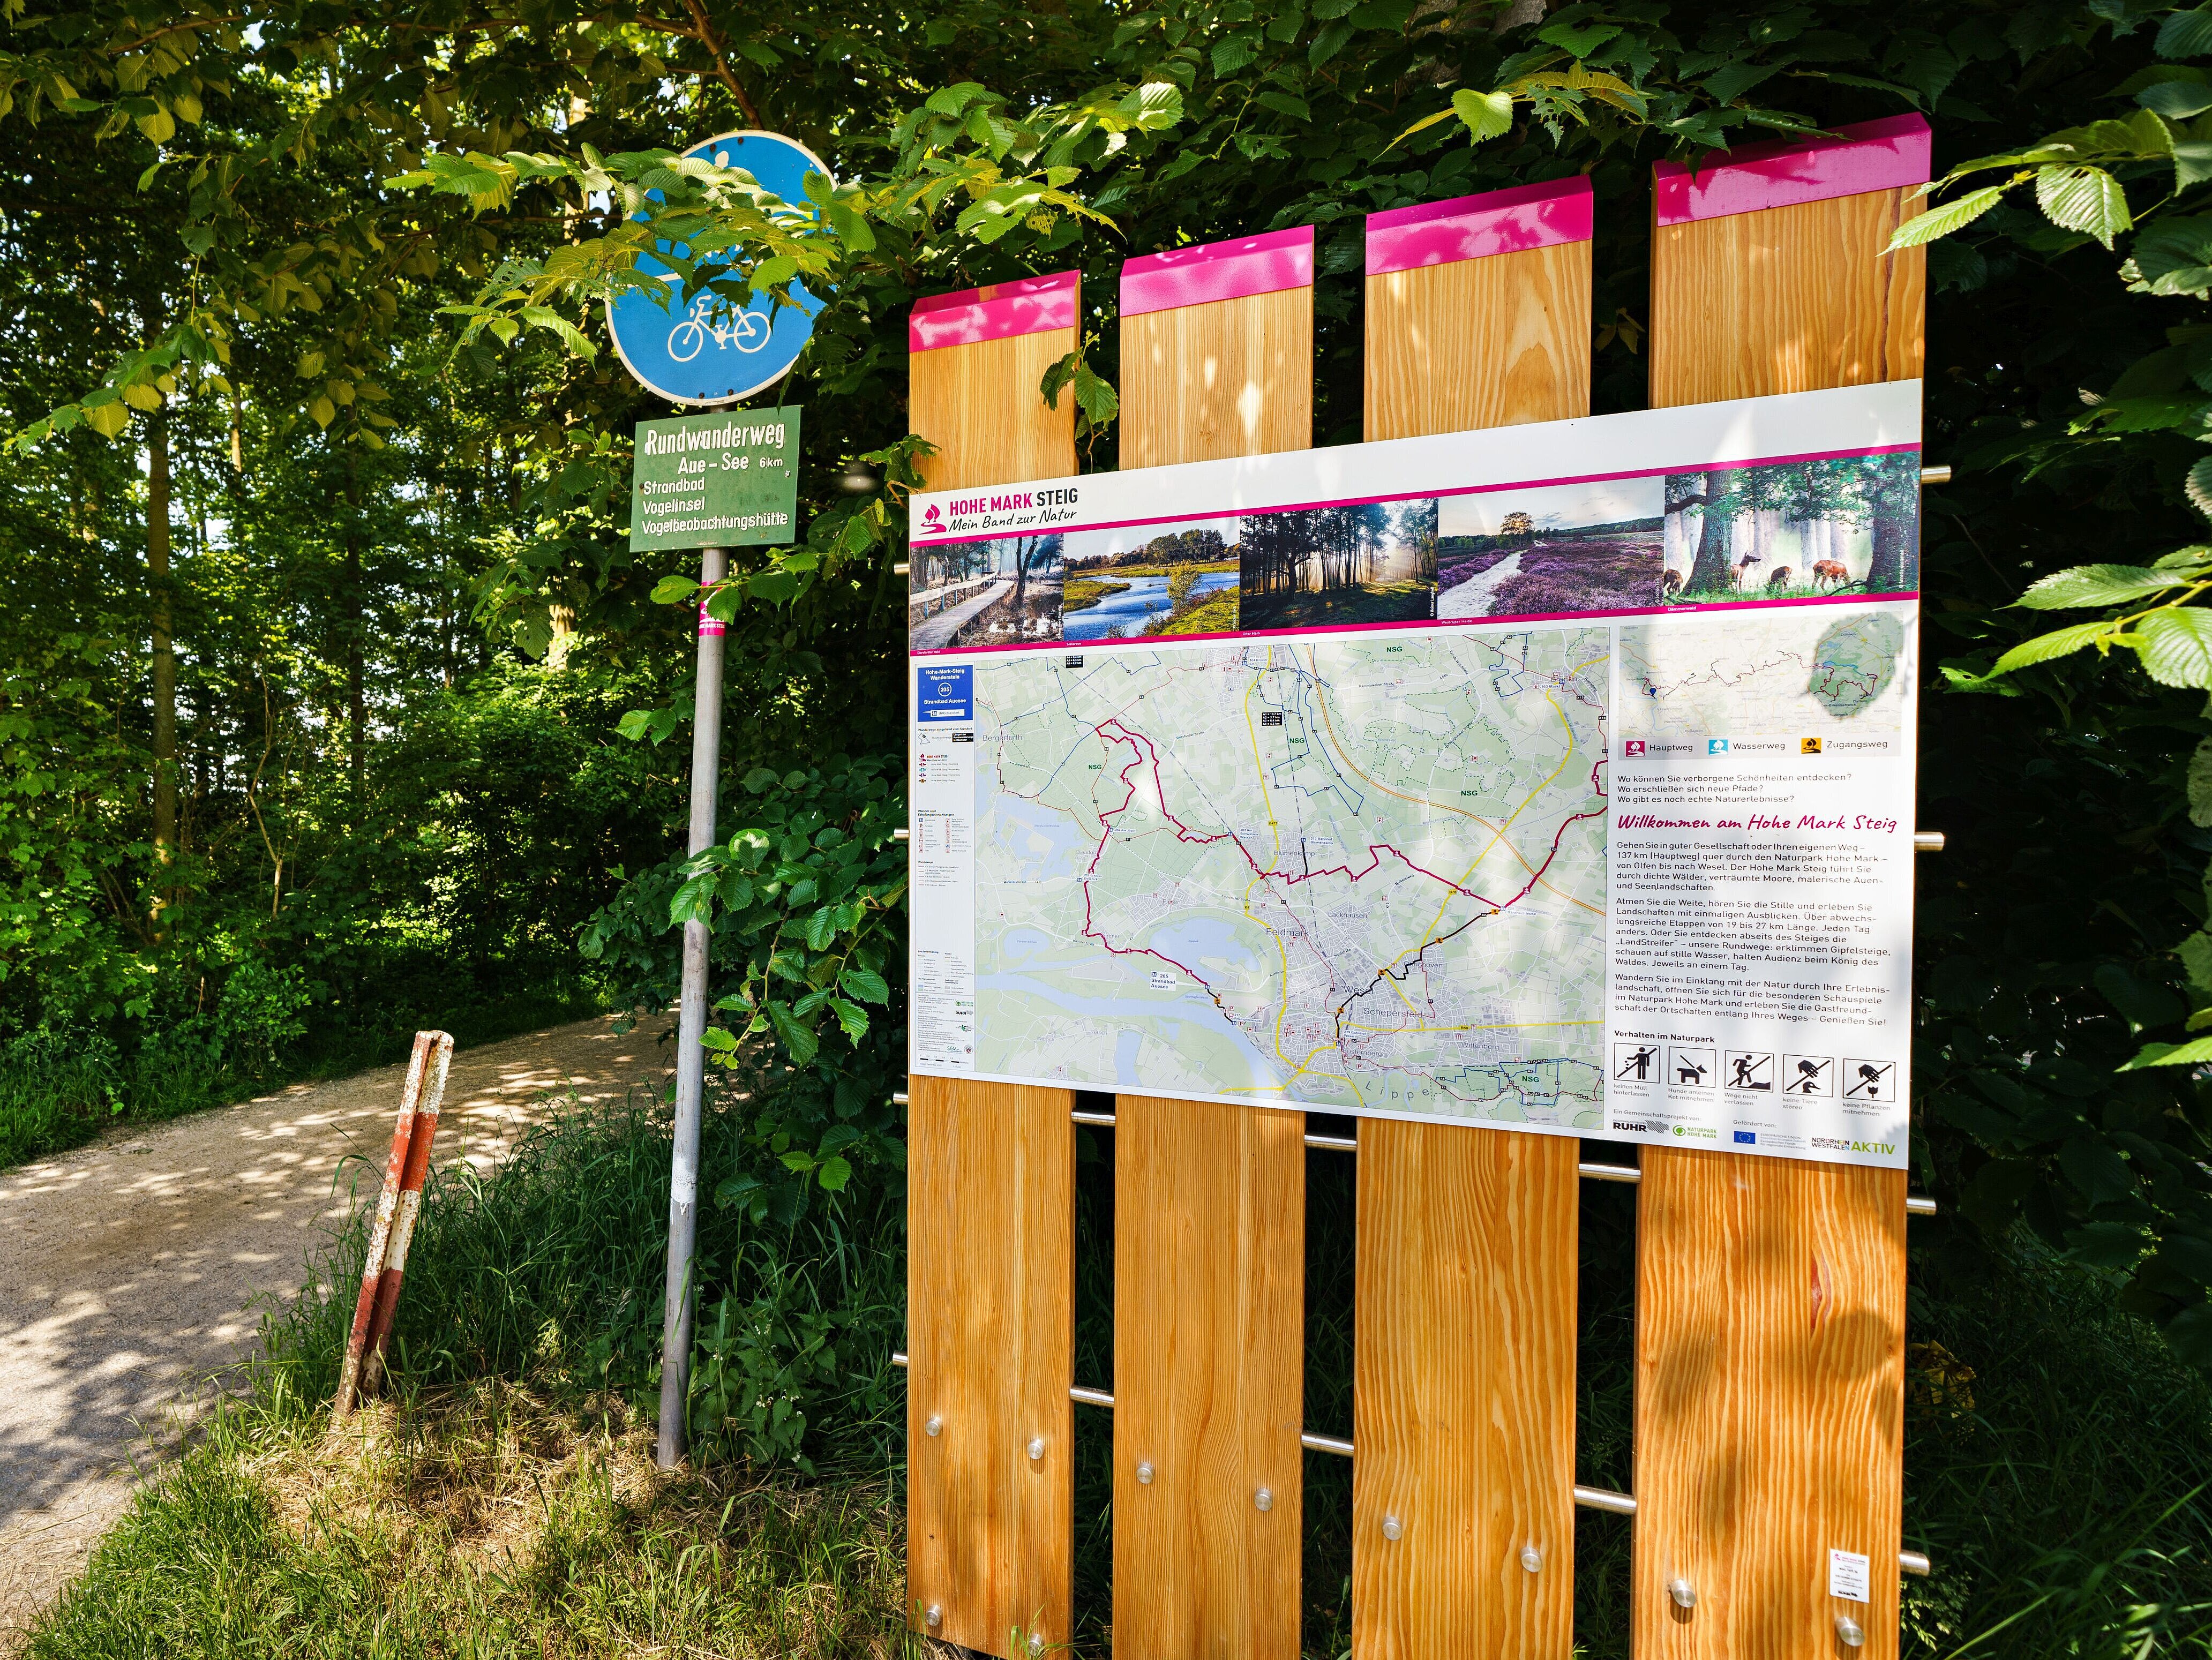 Beschreibungs- und Hinweistafel zum Fernwanderweg Hohe Mark Steig am Auesee in Wesel.